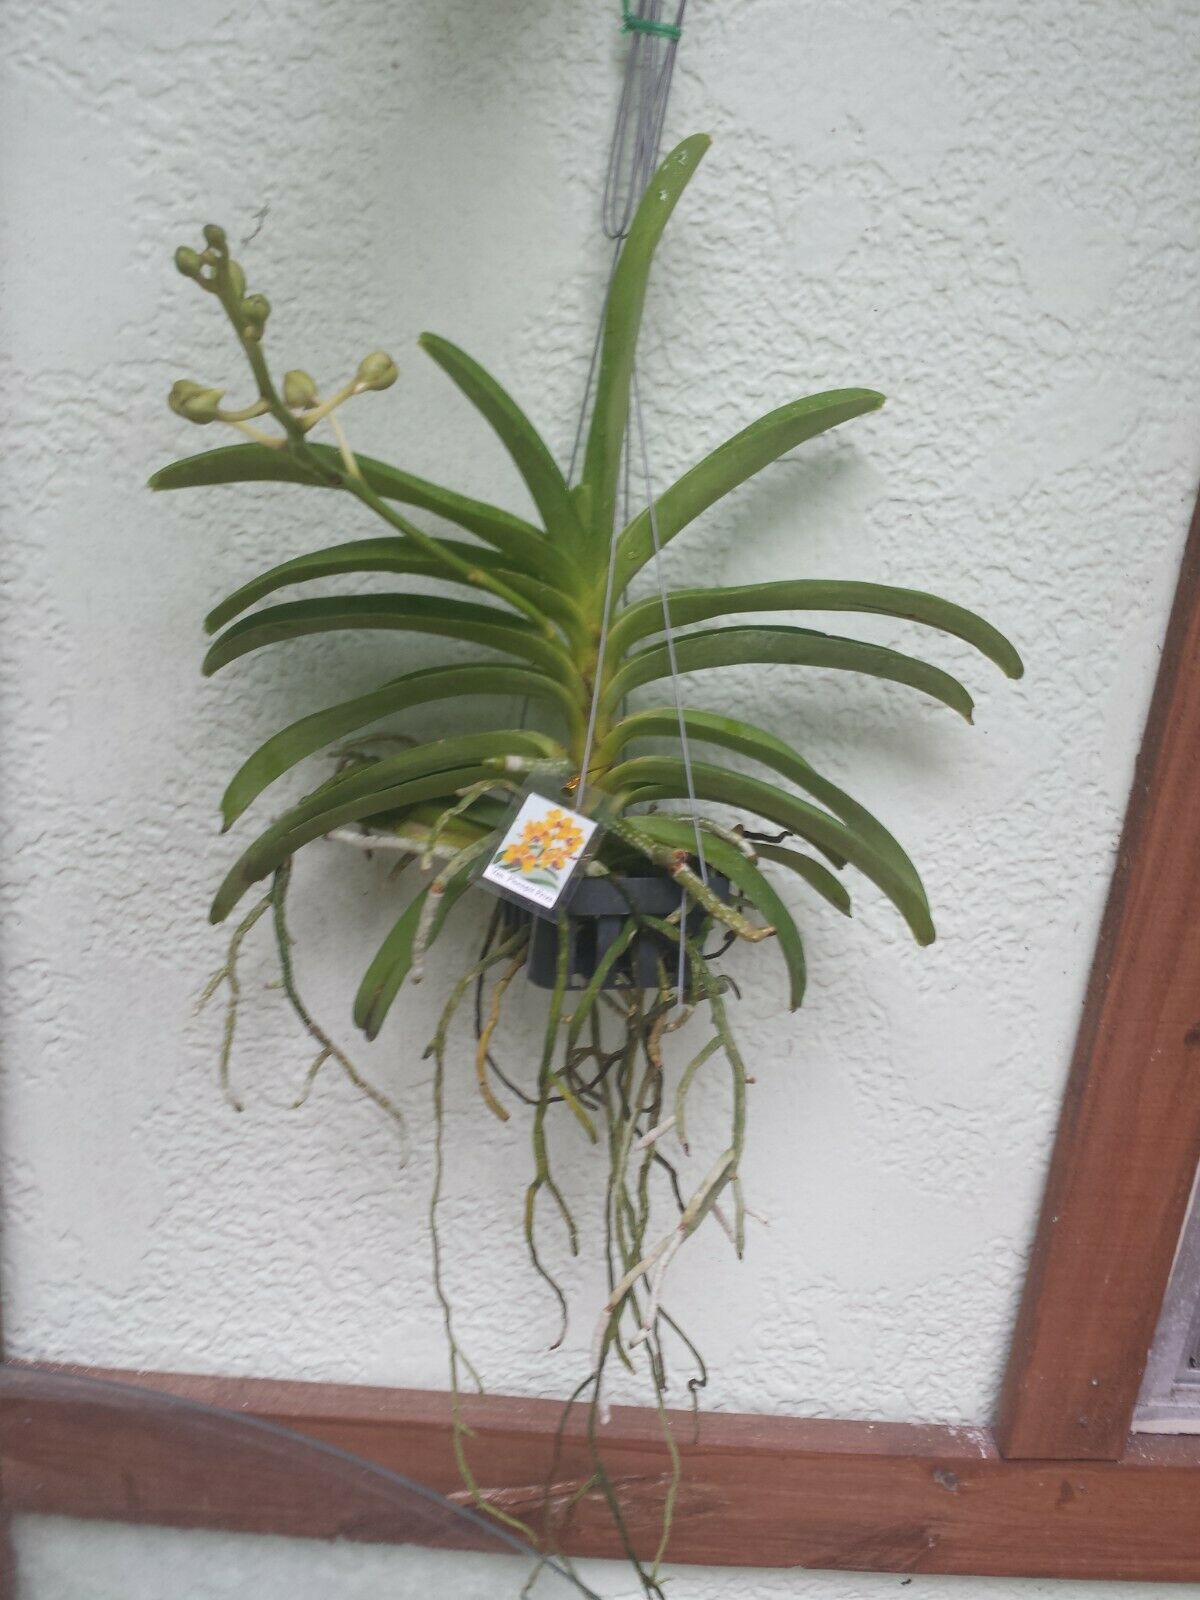 Vanda Ploenpit Prize Fragrant Tropical Plants